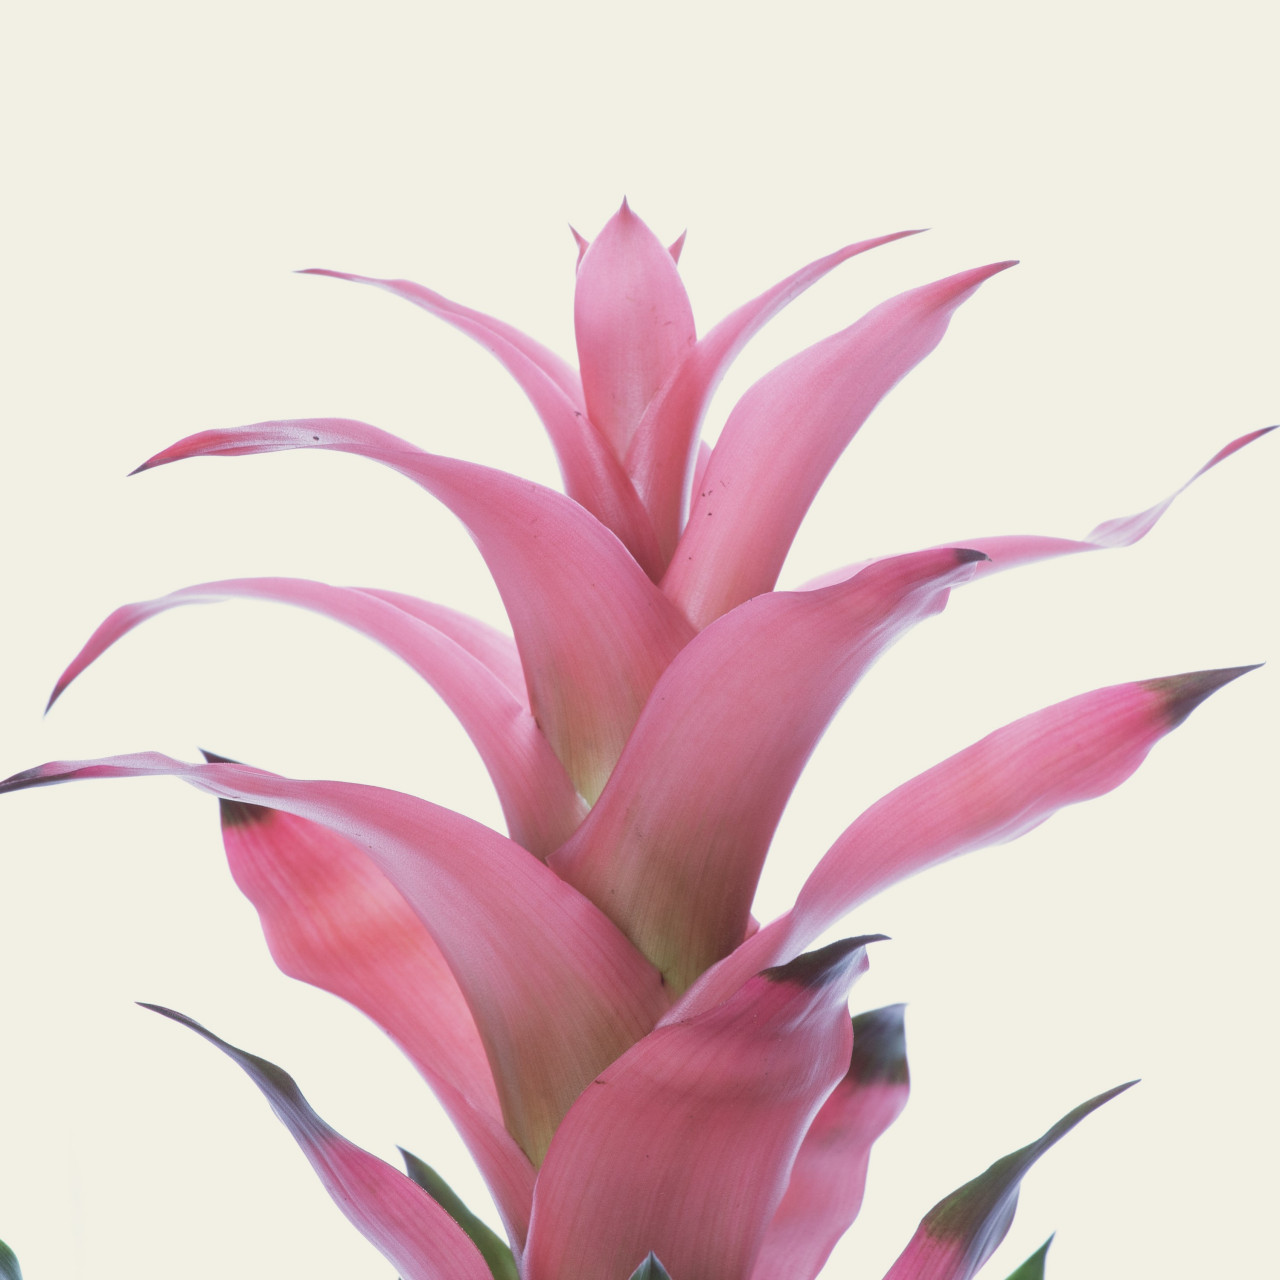 Mix 3 x Bromelia roz, Guzmania lingulata, planta naturala decorativa, in ghiveci P12, 40 cm